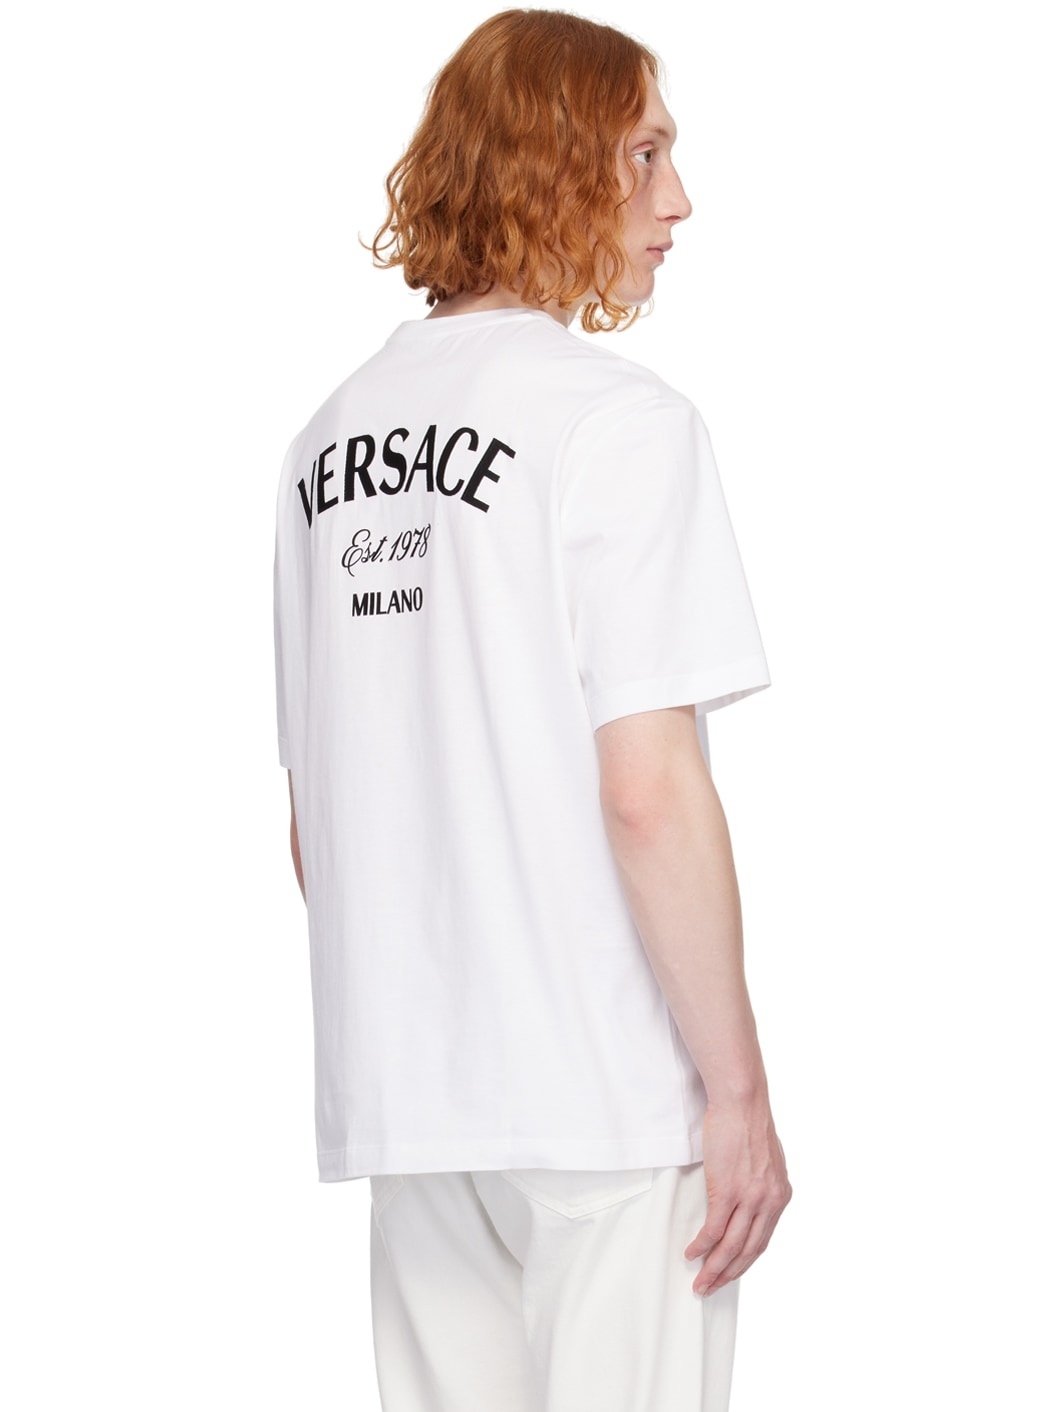 White 'Versace Milano' T-Shirt - 3